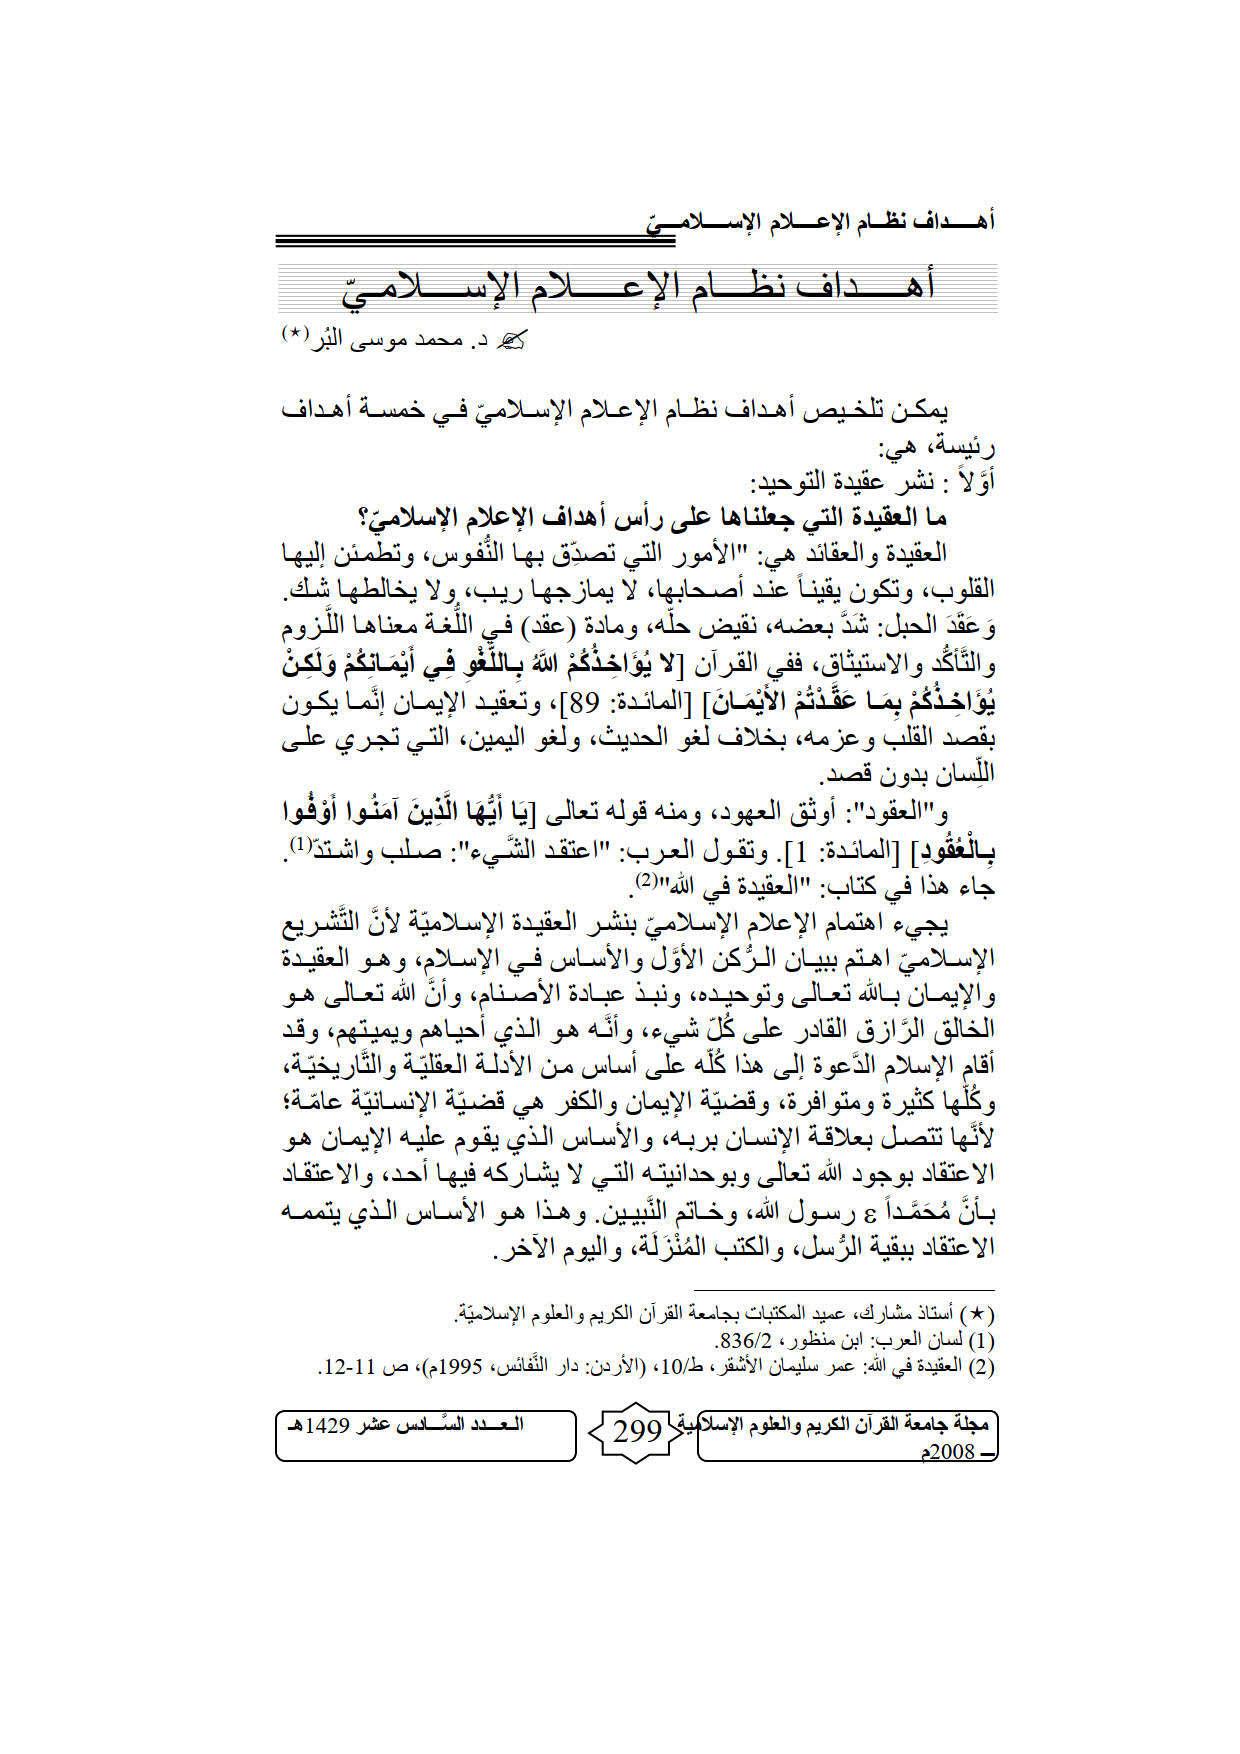 أهداف نظام الإعلام الإسلامي _ مقالة في مجلة جامعة القرآن الكريم والعلوم الإسلامية